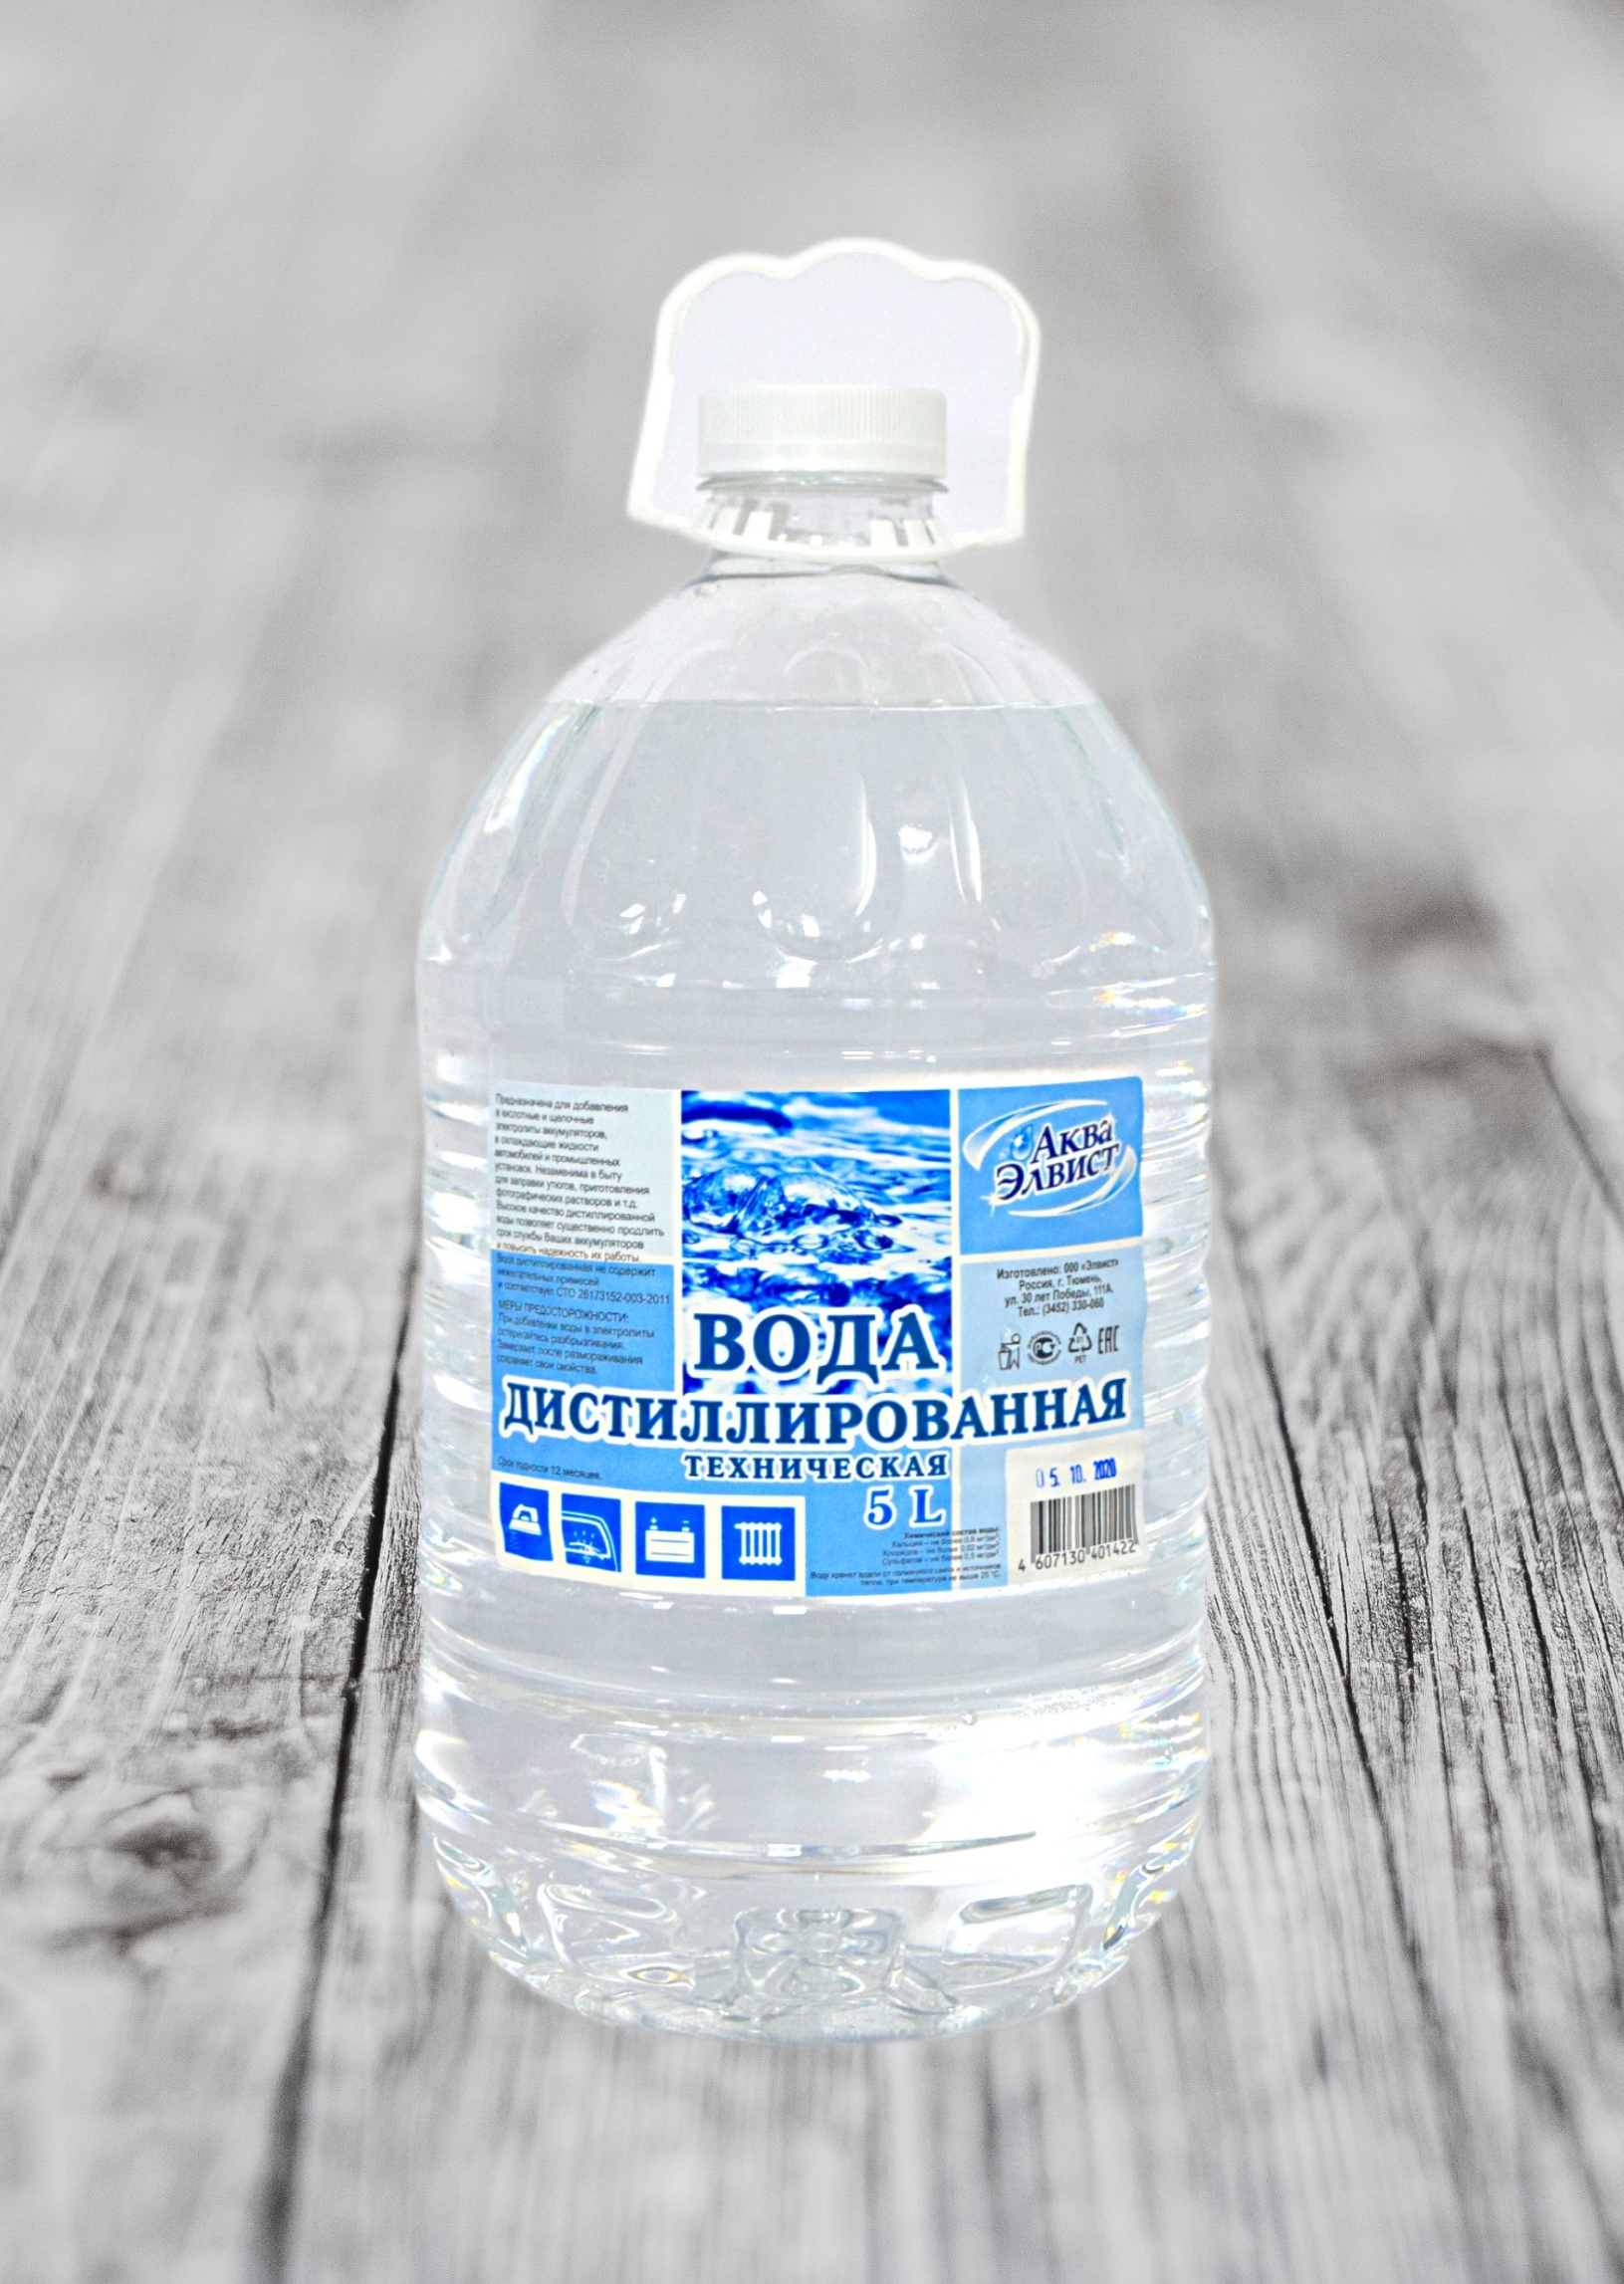 Купить дистиллированную воду в Тюмени 5, 19 литров.